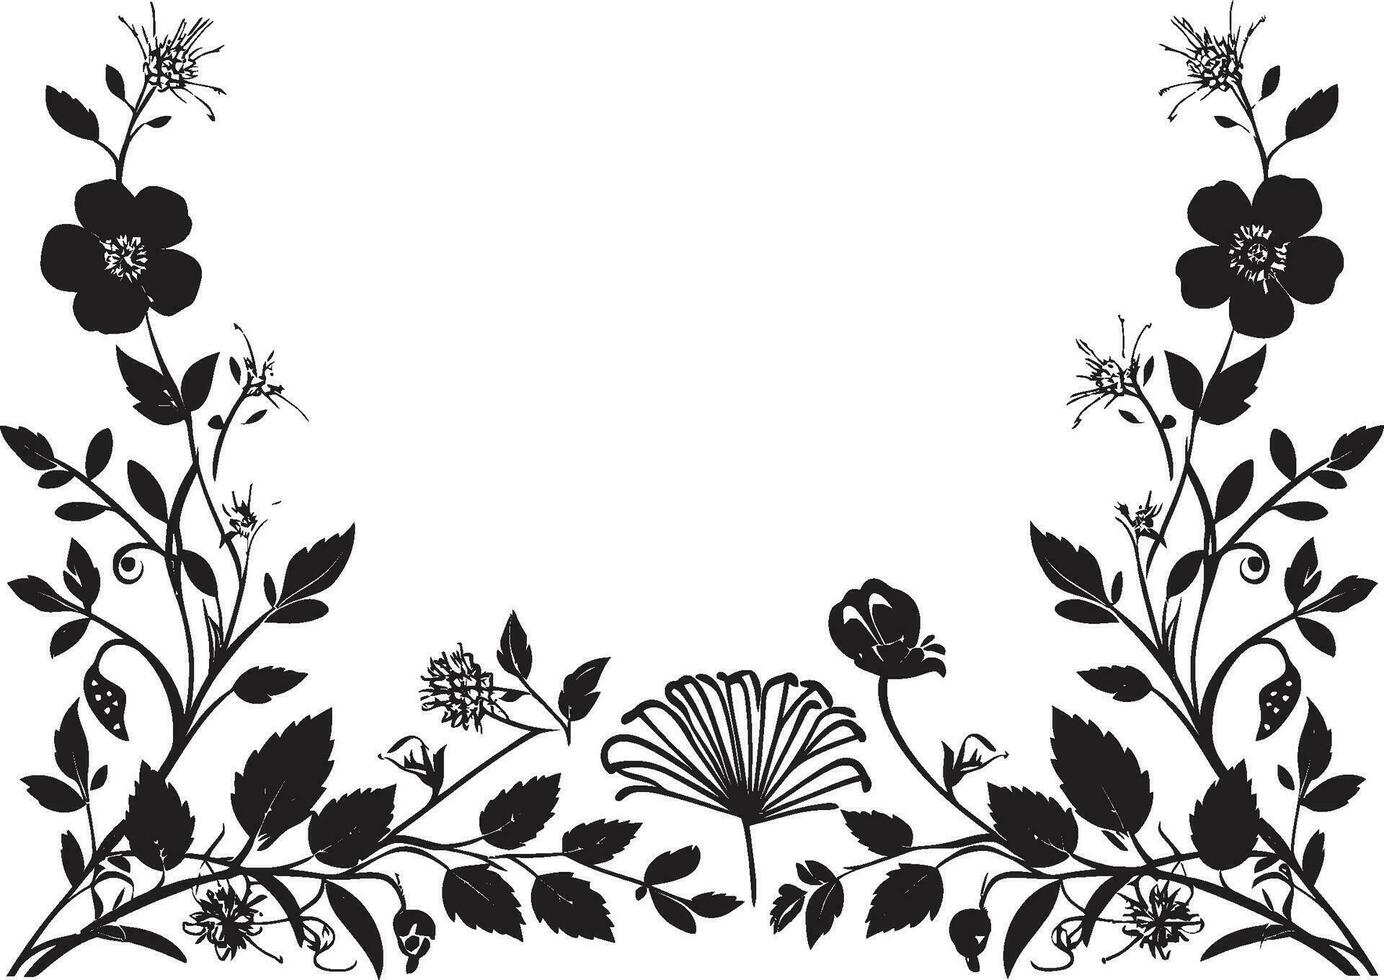 capricieux noir fleur impressions invitation carte Icônes graphite botanique talent artistique noir emblématique vecteurs vecteur